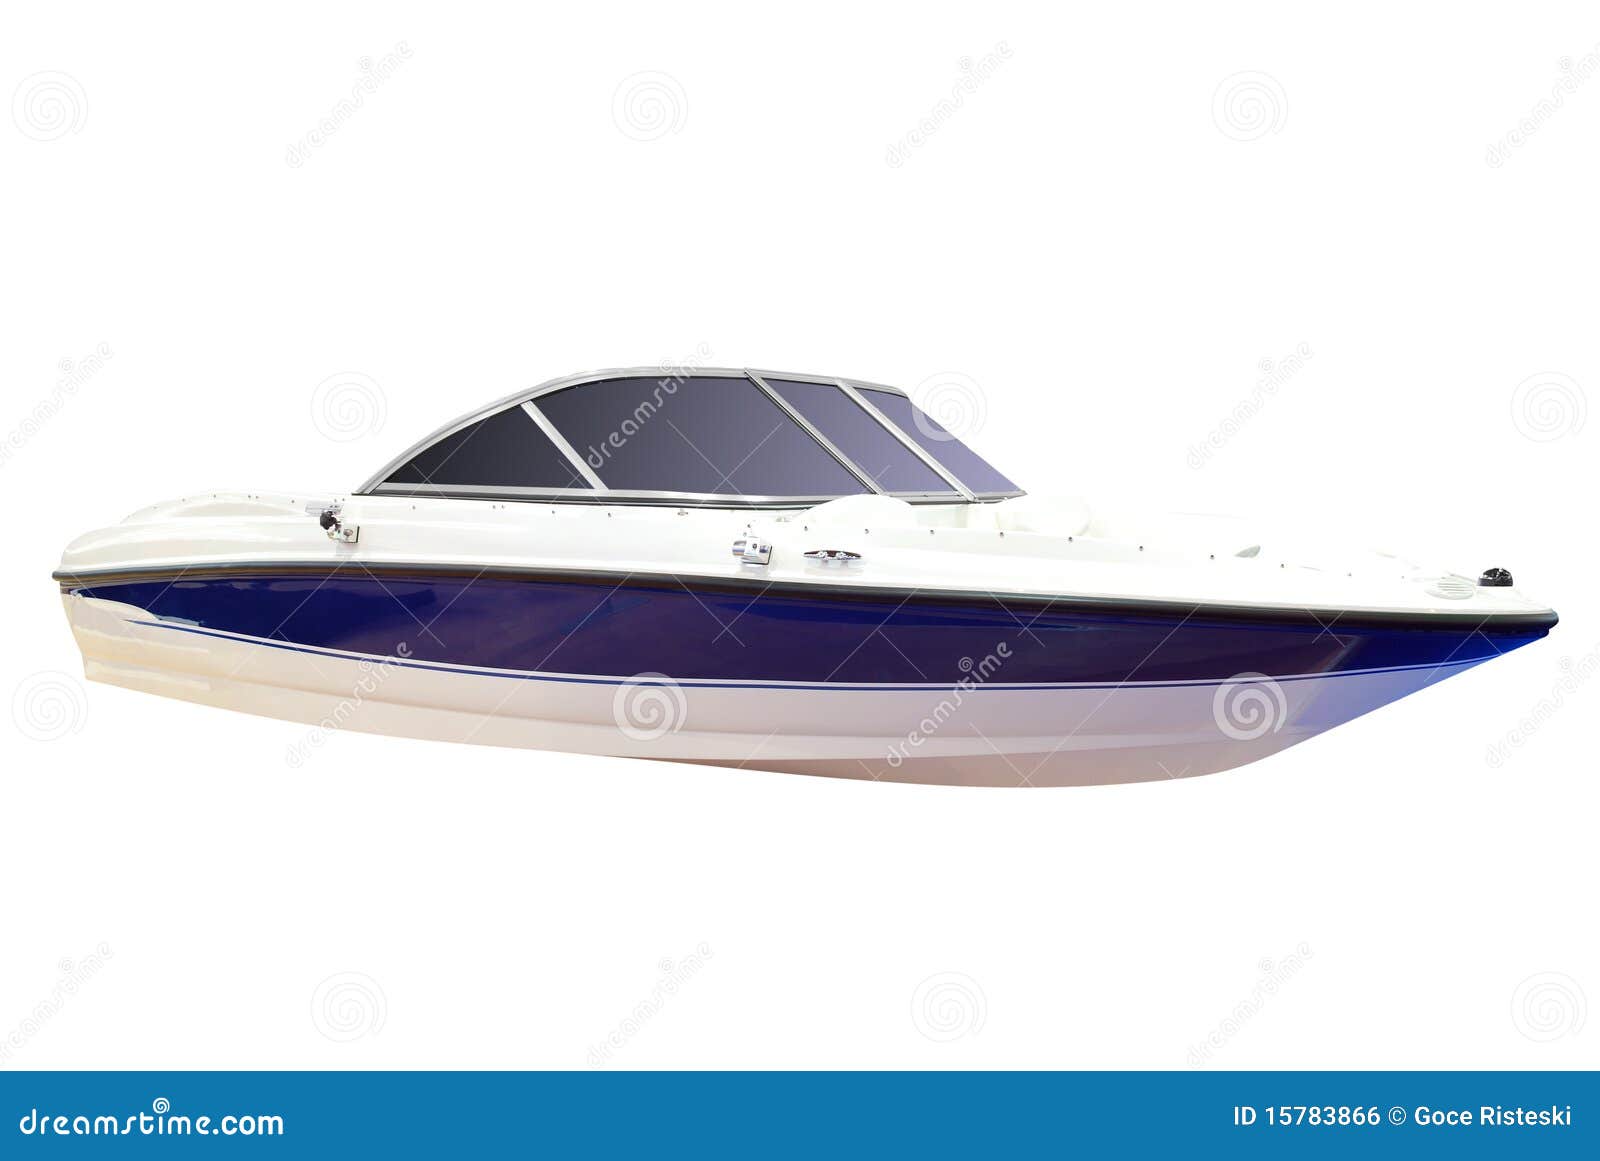 Luxury Speed Boat Isolated Royalty Free Stock Image - Image: 15783866